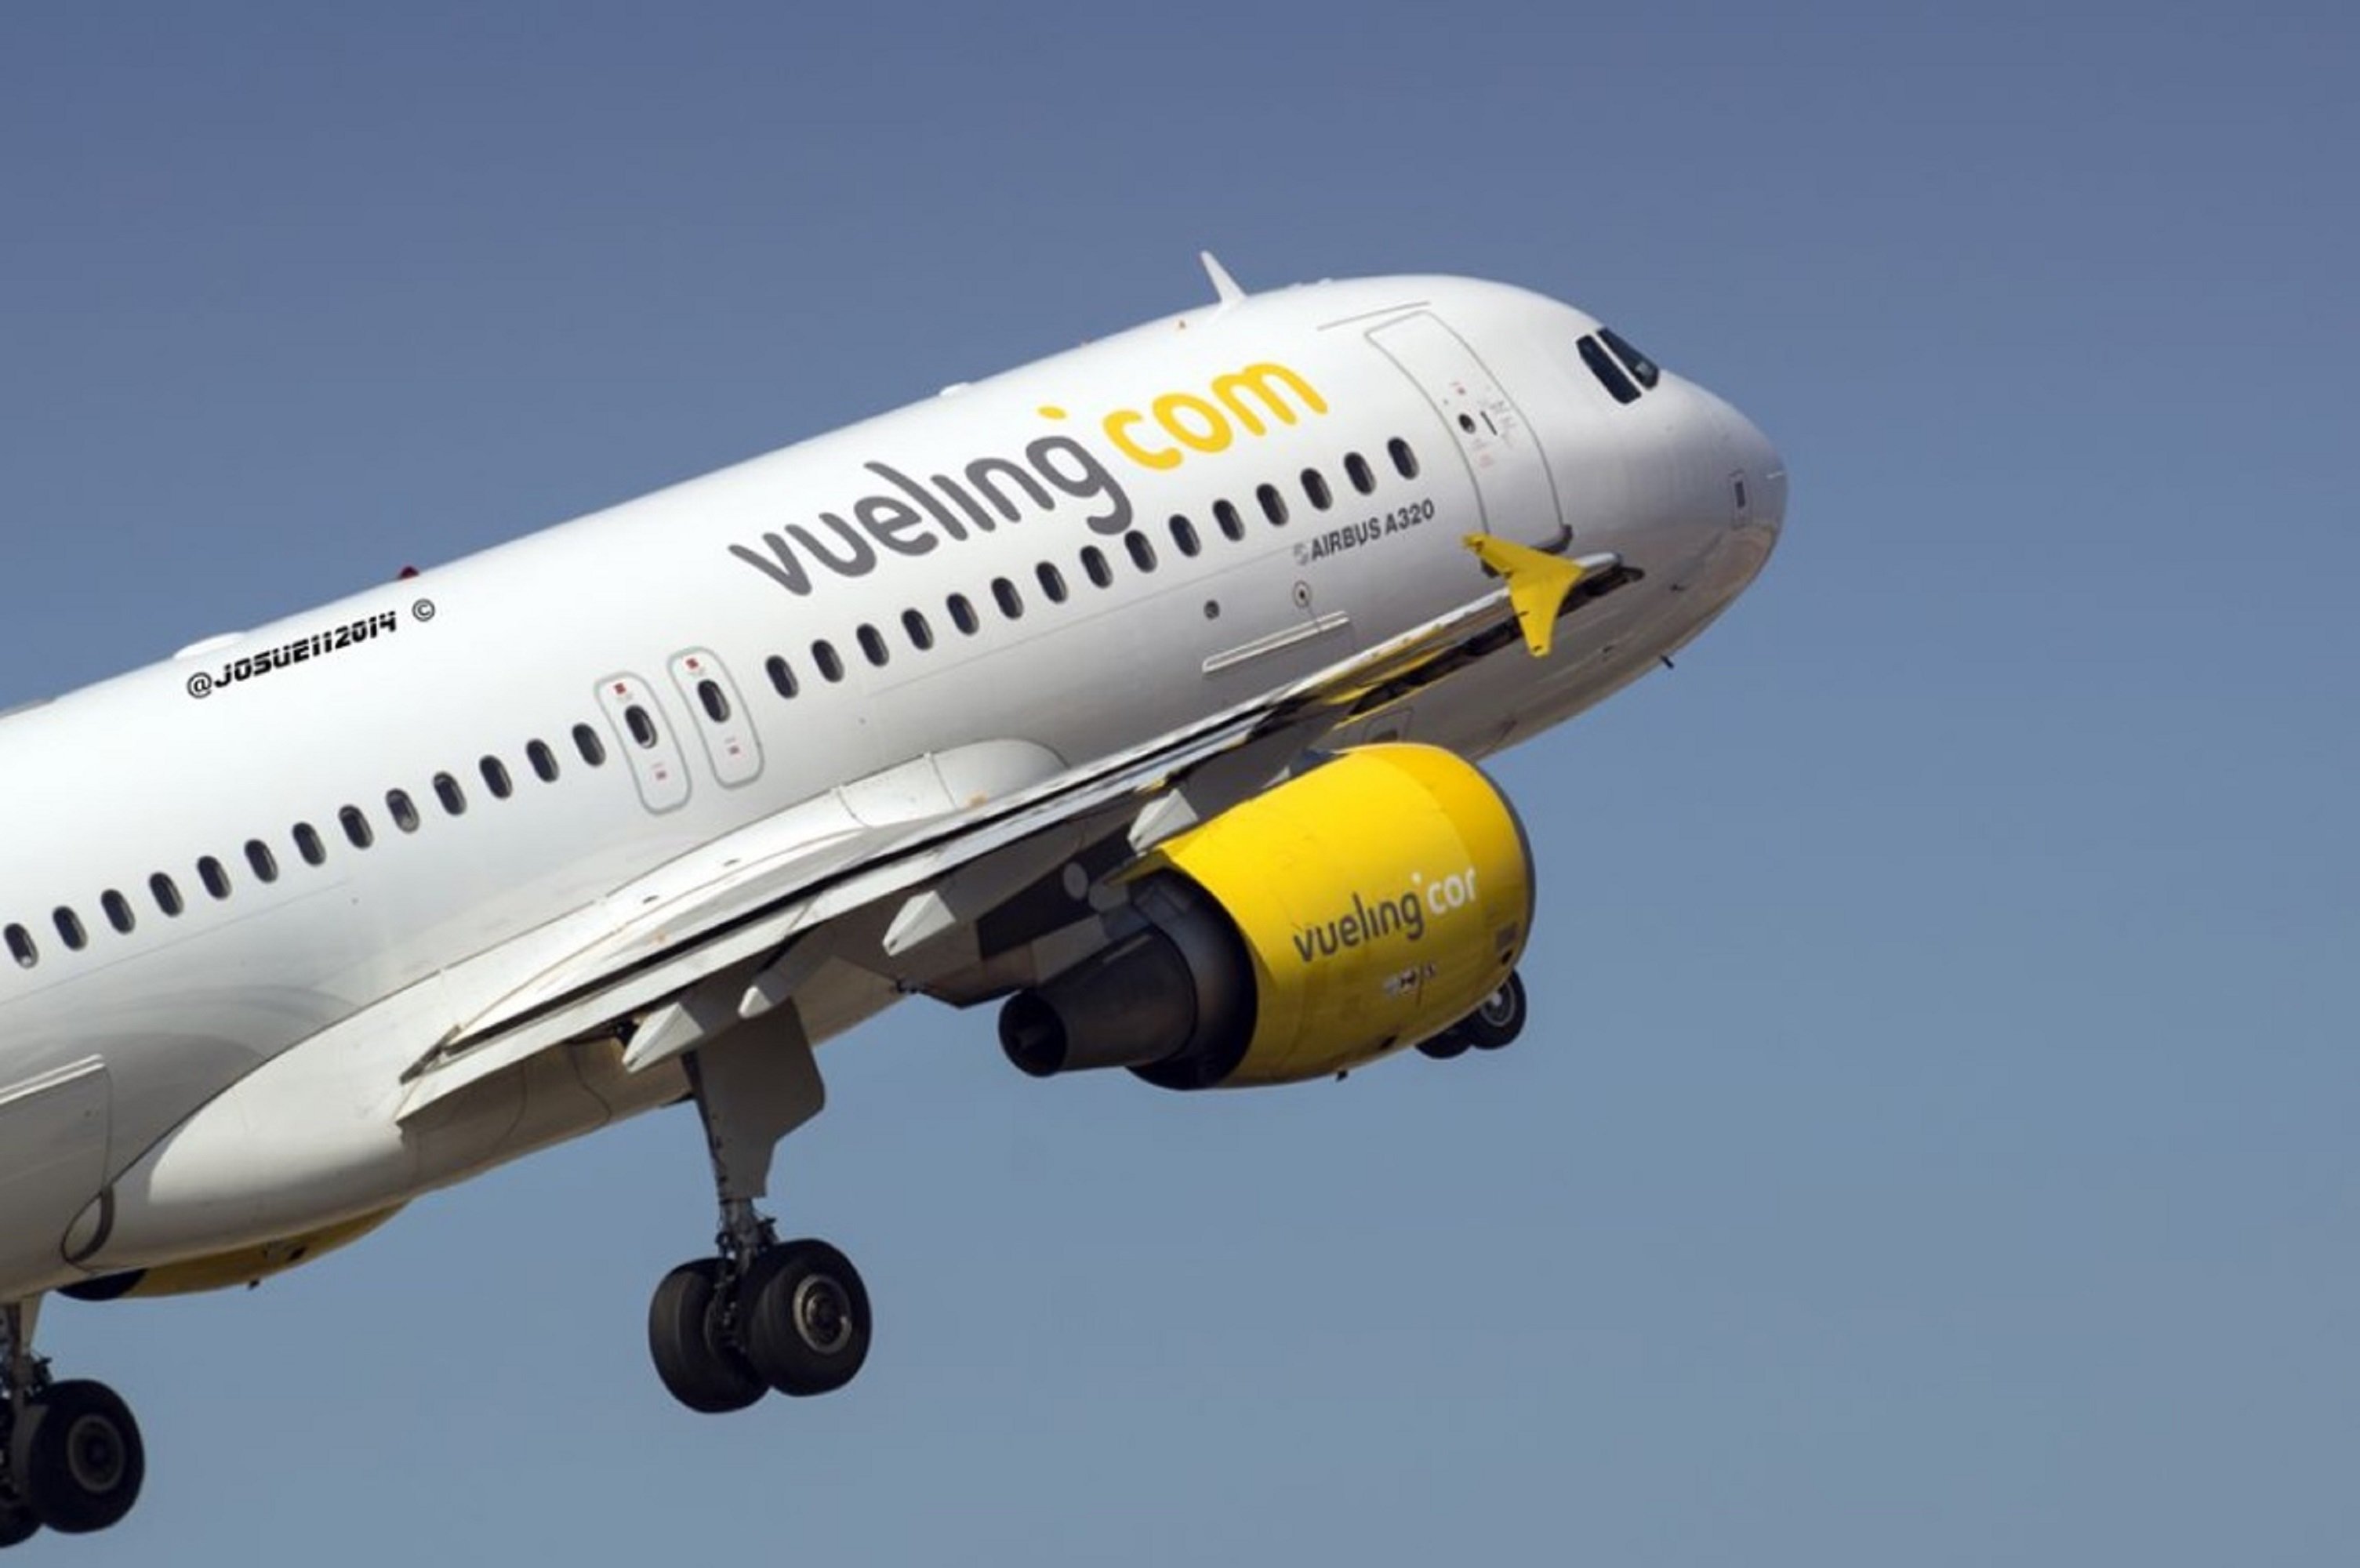 Vueling ofrece vuelos a 15 euros para celebrar sus 15 años